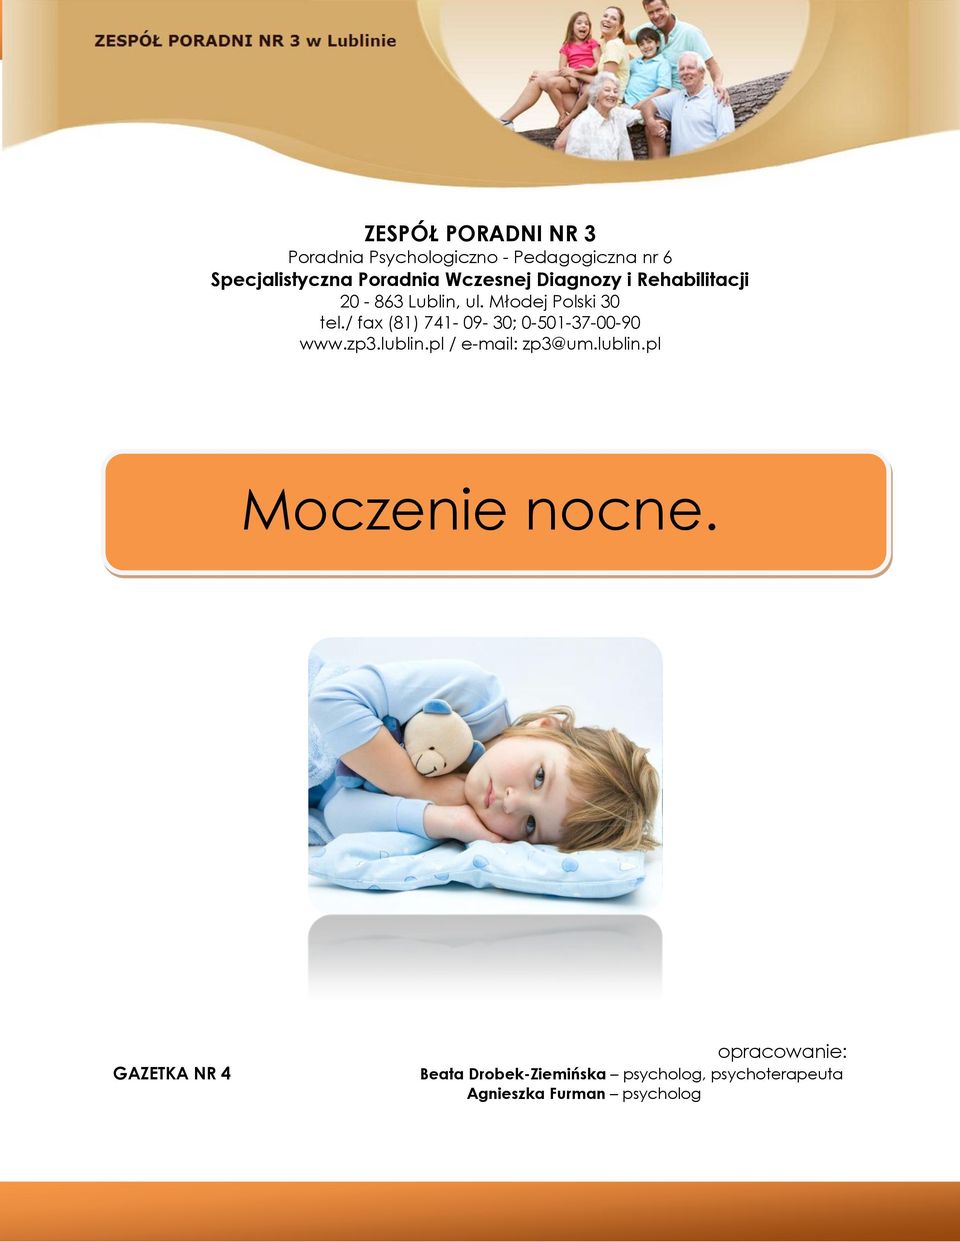 / fax (81) 741-09- 30; 0-501-37-00-90 www.zp3.lublin.pl / e-mail: zp3@um.lublin.pl Moczenie nocne.